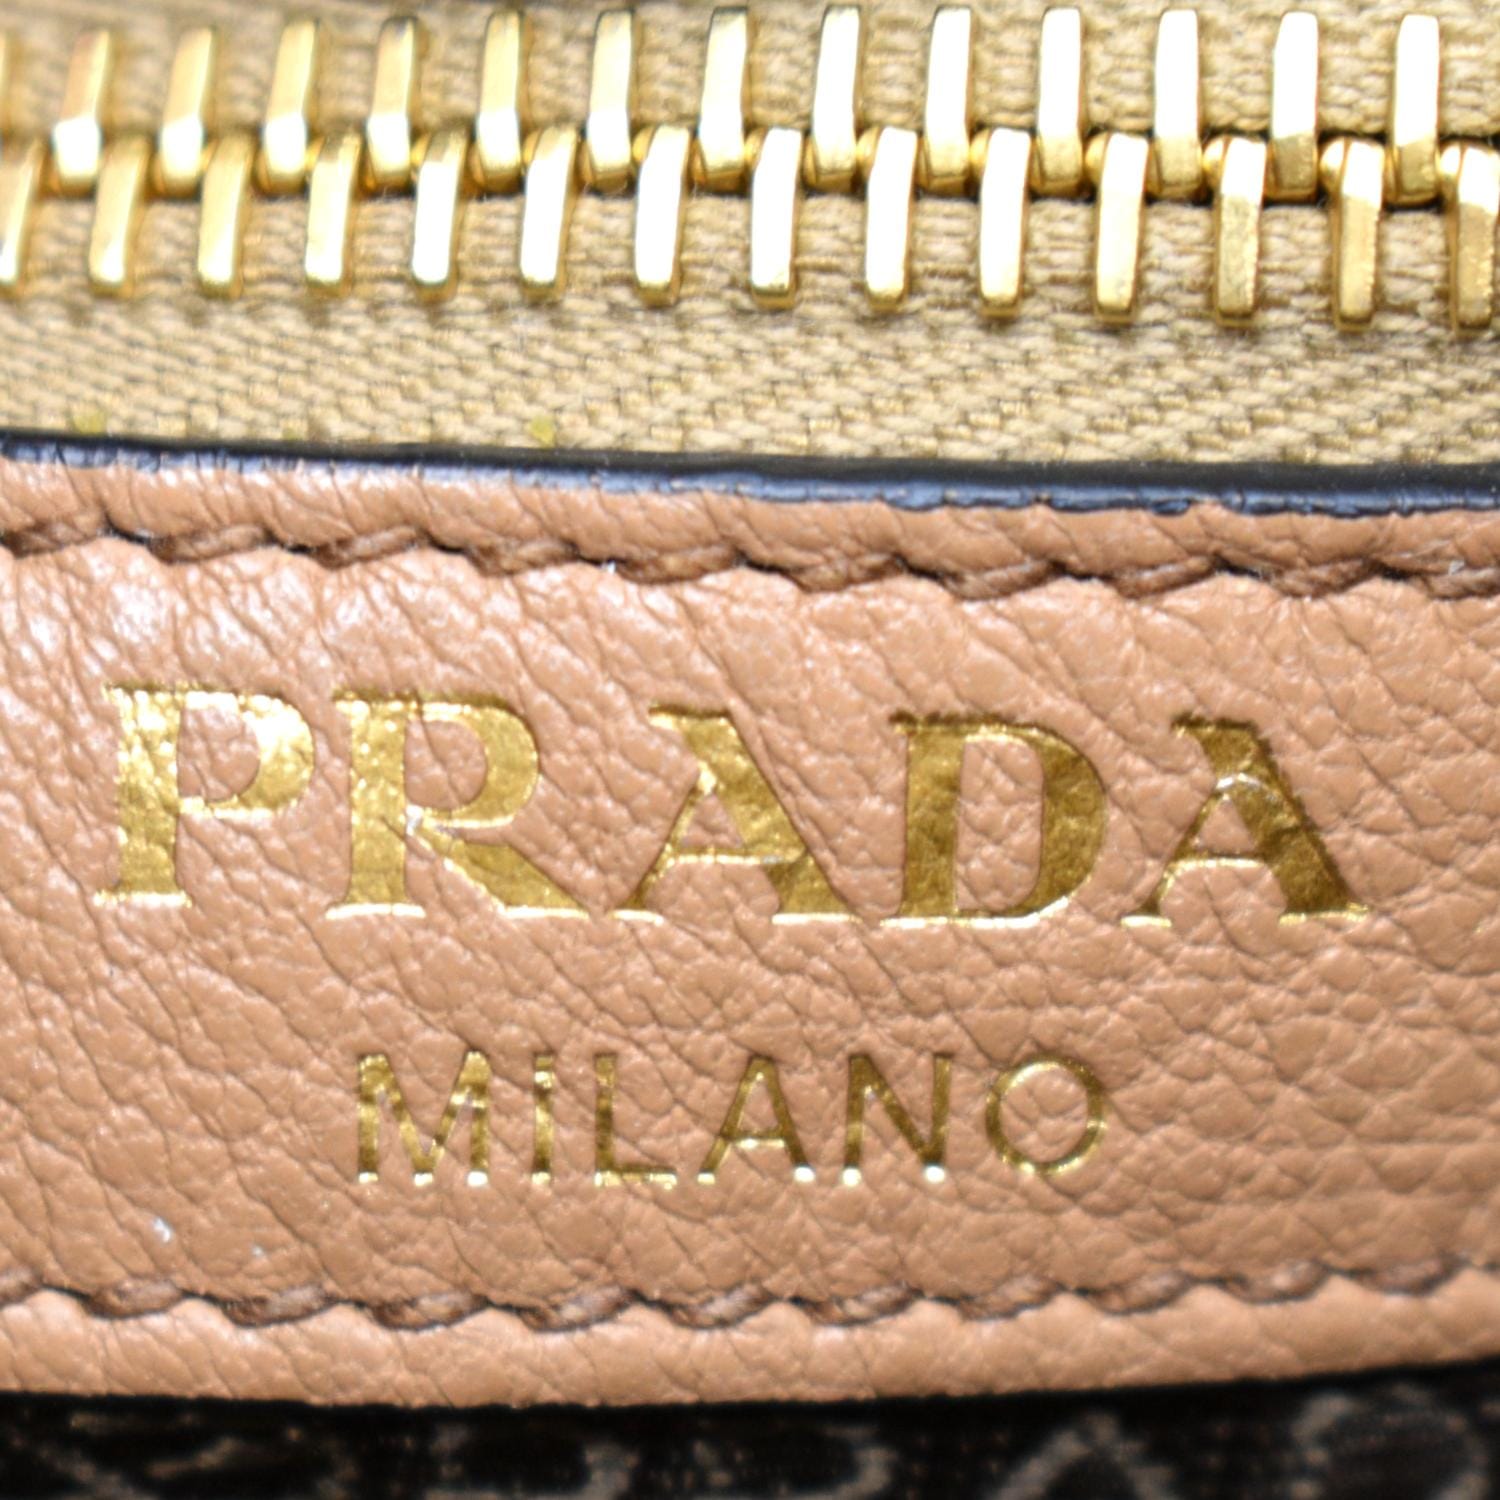 PRADA Logo Soft Leather Hobo Shoulder Bag Taupe